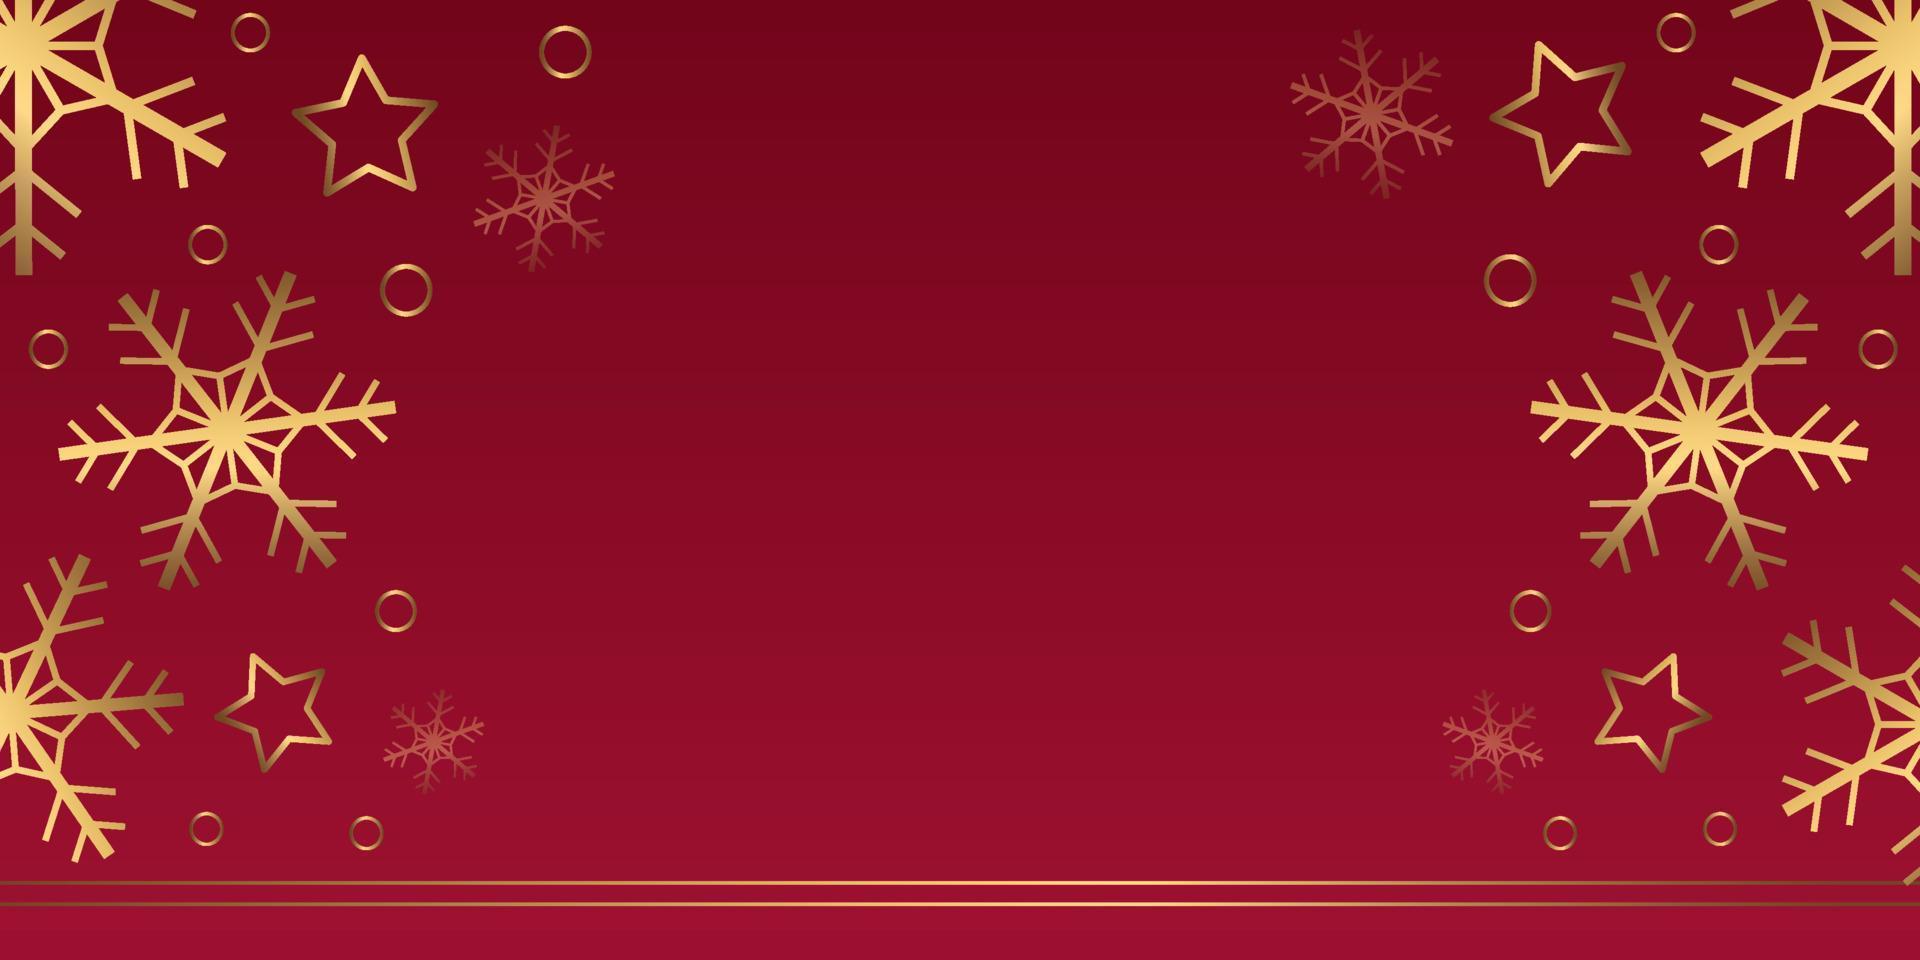 banner de inverno do vetor com flocos de neve de ouro, estrelas, anéis sobre fundo vermelho. pano de fundo horizontal com copyspace.